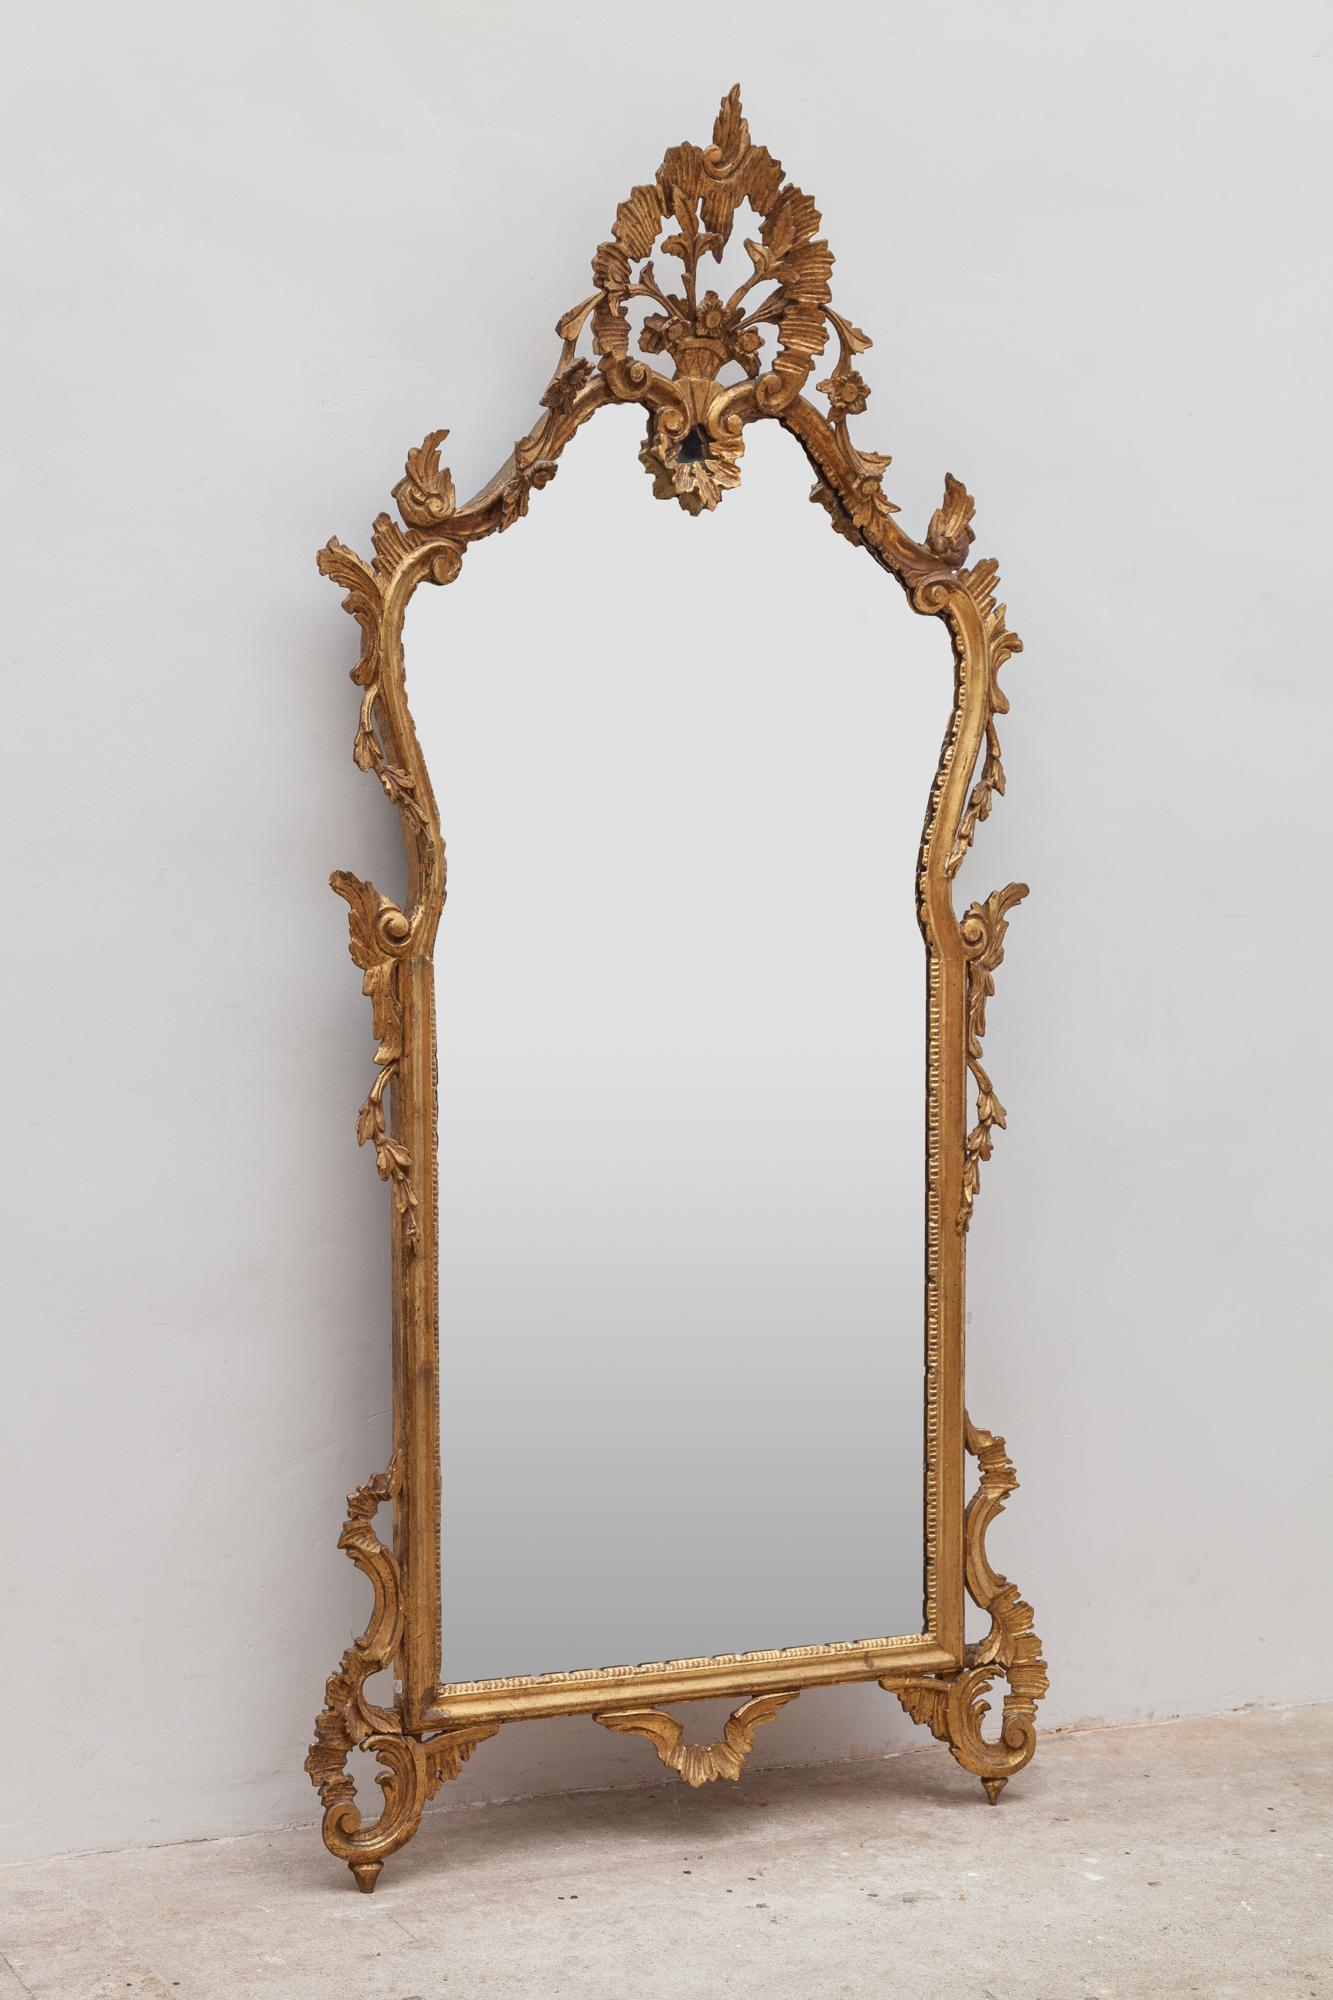 Specchio del XIX secolo in stile rococò, con cornice dorata raffigurante un cesto di fiori. Lo specchio è in ottime condizioni e non presenta graffi sul vetro.
Lo specchio French Rococo Revival del 1860 illuminerà splendidamente qualsiasi spazio.